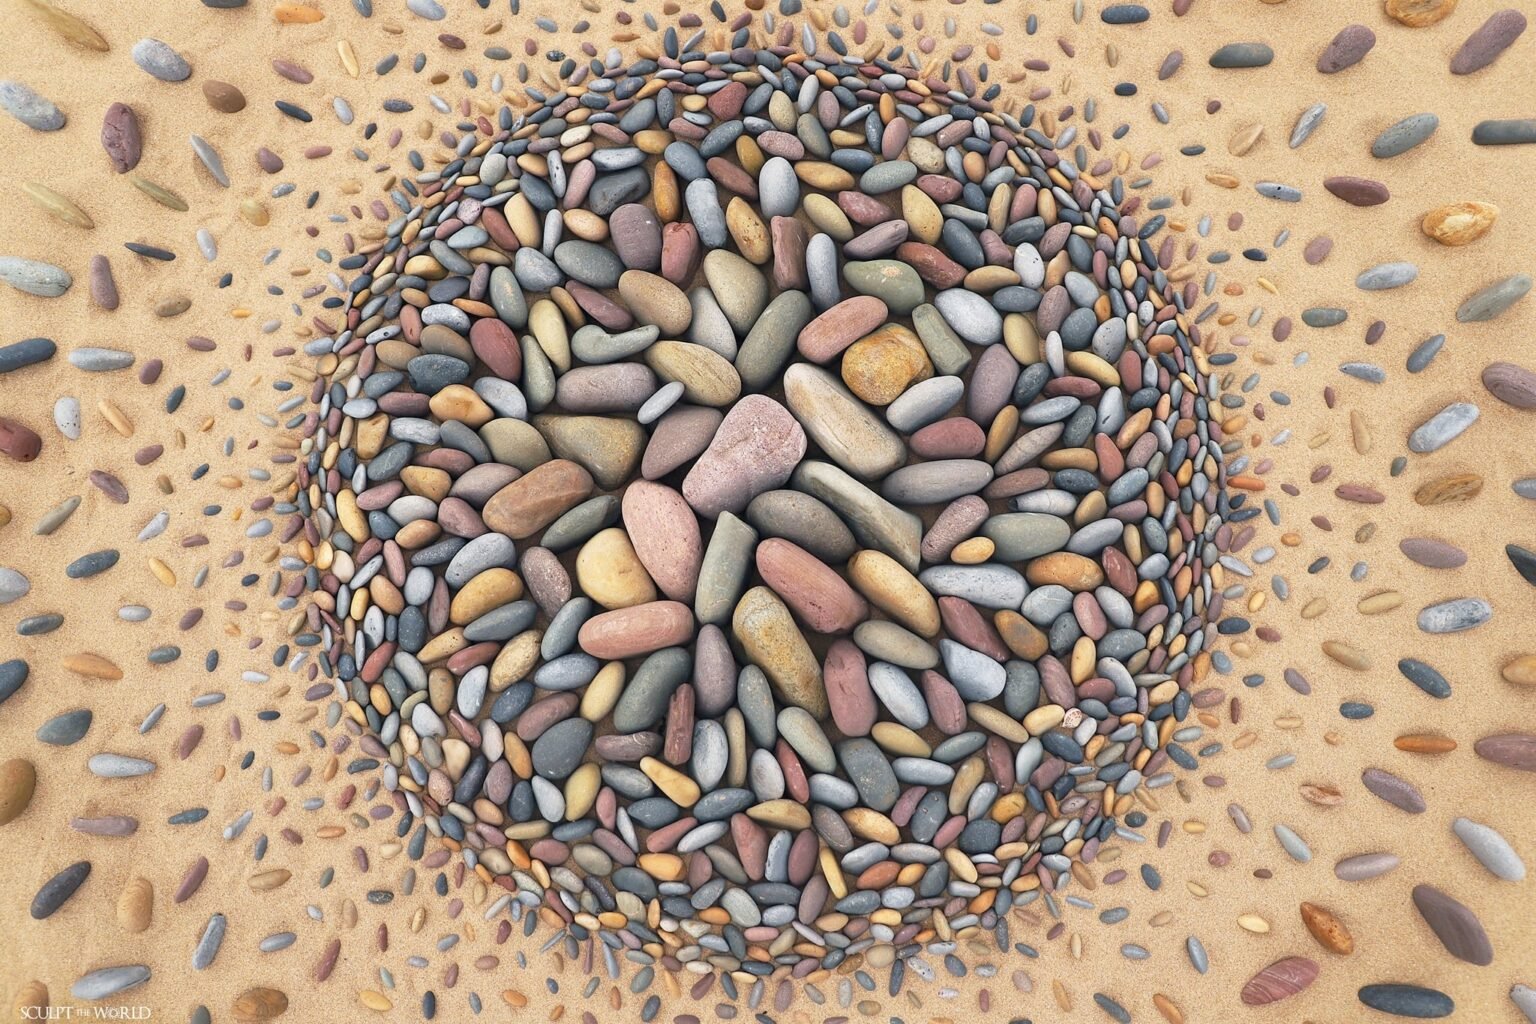 Obras efímeras de arena y piedras que crean hipnóticas composiciones, por Jon Foreman